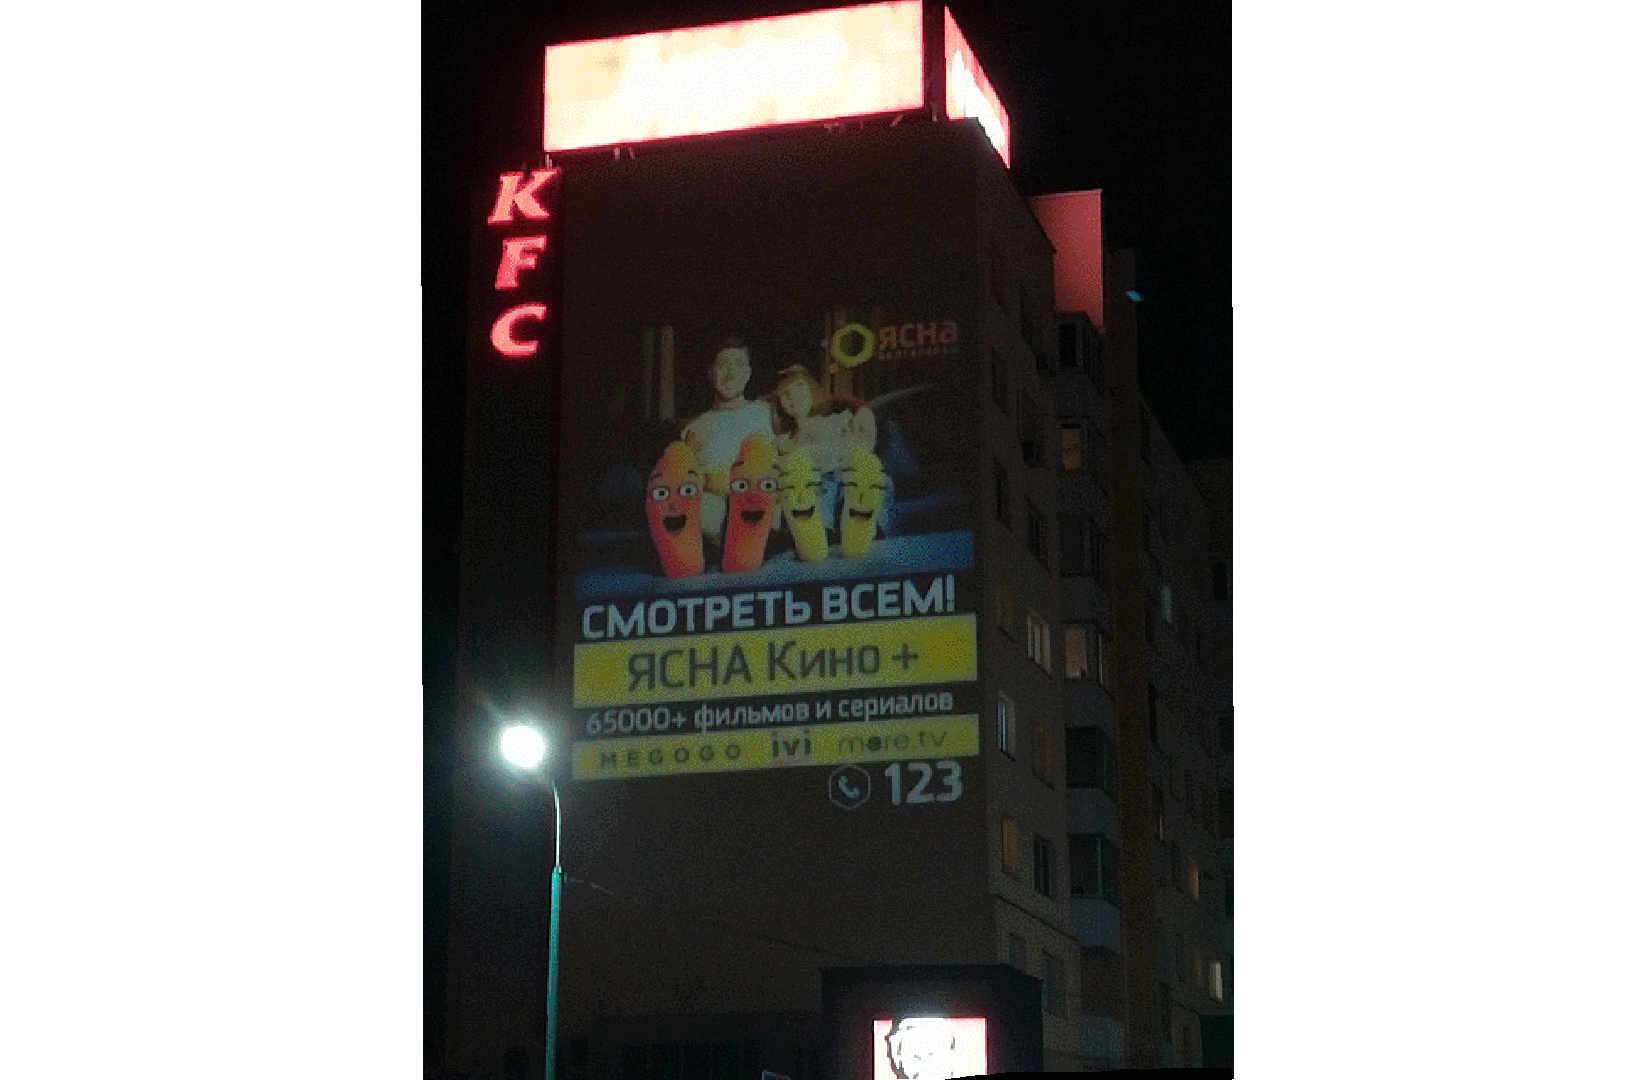 Реклама на фасаде здания. Брестской филиал РУП Белтелеком
ГОБО-проектор GOSLAID 40008, вращающийся, мощностью 400Вт, рассчитан на 9 рекламных